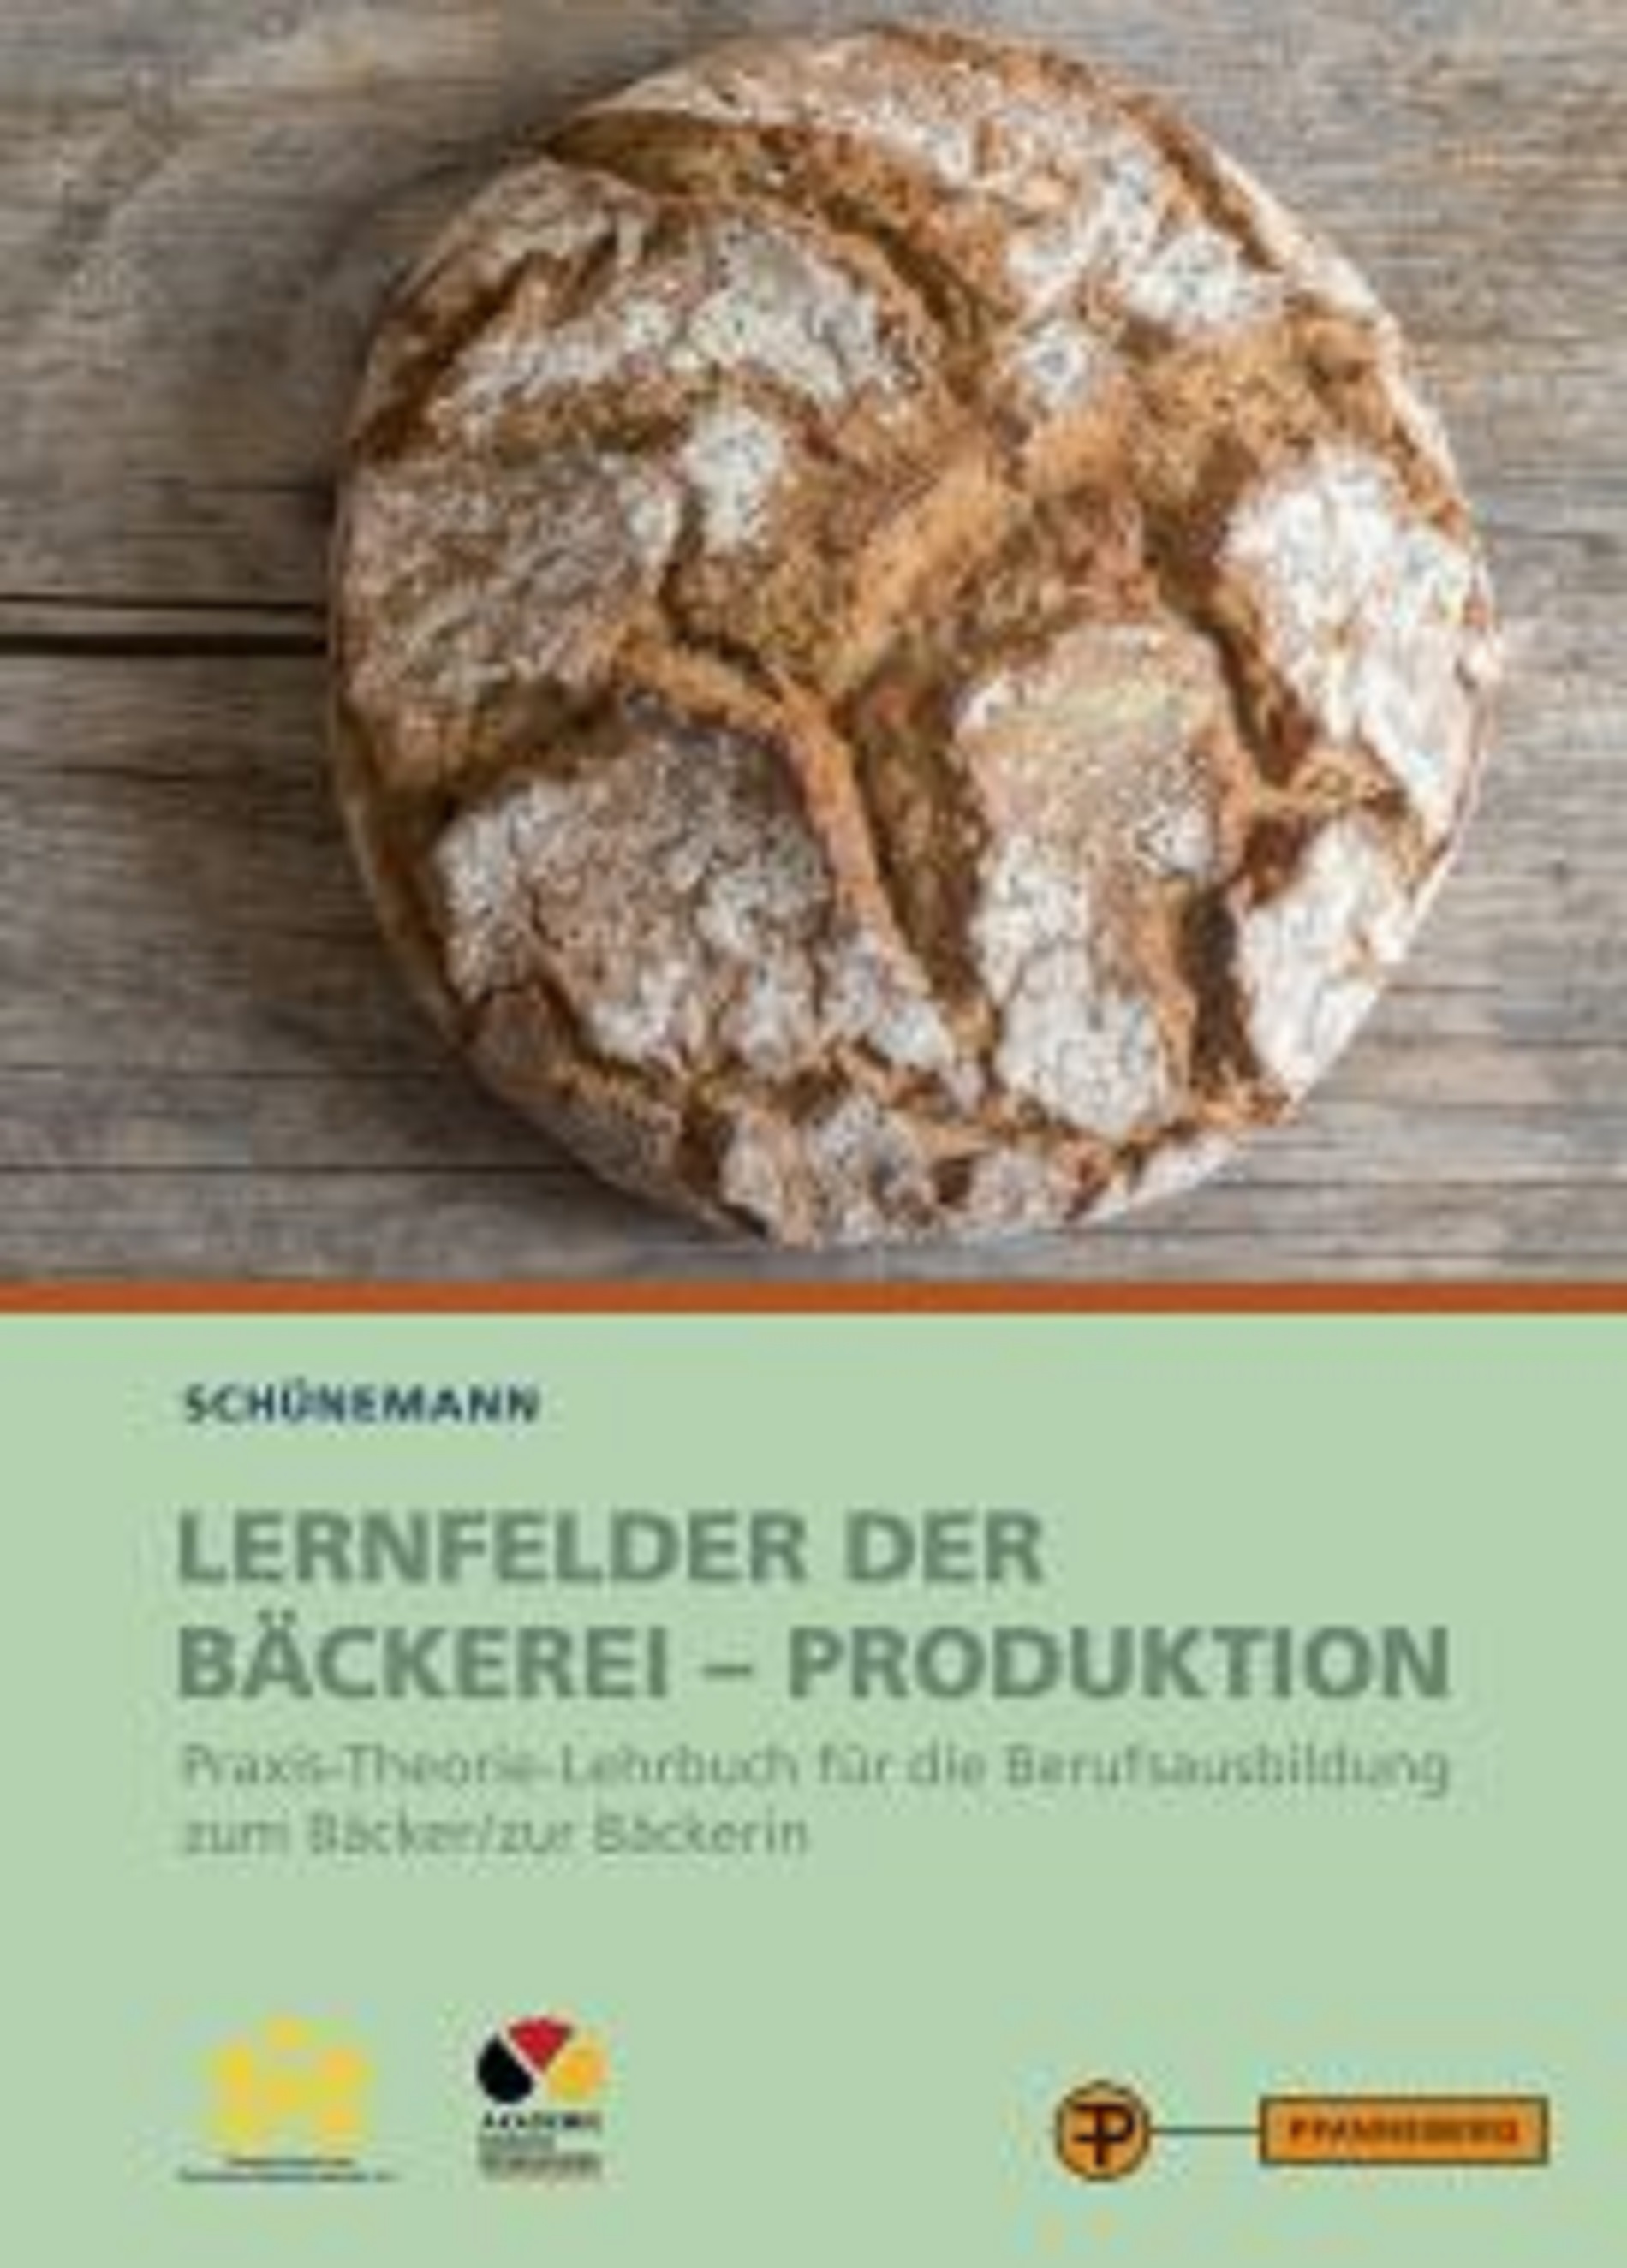 Lernfelder der Bäckerei - ProduktionPraxis-Theorie-Lehrwerk für die Berufsausbildung zum Bäcker/